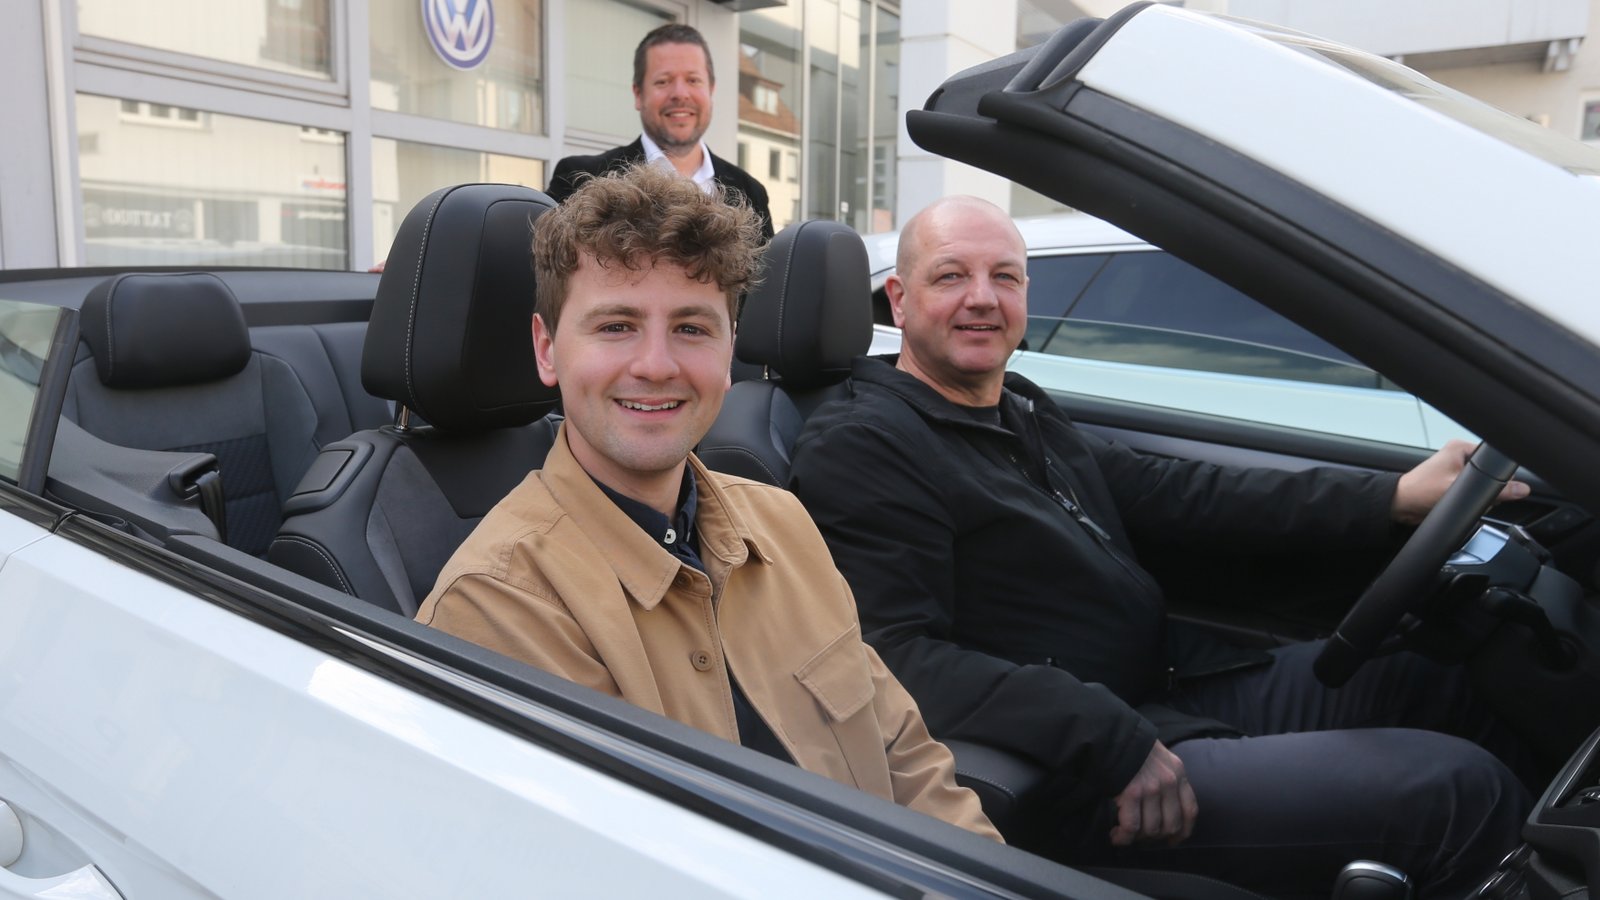 Gewinner Miguel Rapp (vorne) und sein Vater Harald Rapp nehmen bei Gunnar Bäuerle vom Sevo-Vertrieb das Cabrio für ihren Wochenendtrip nach München in Empfang.  Foto: Küppers